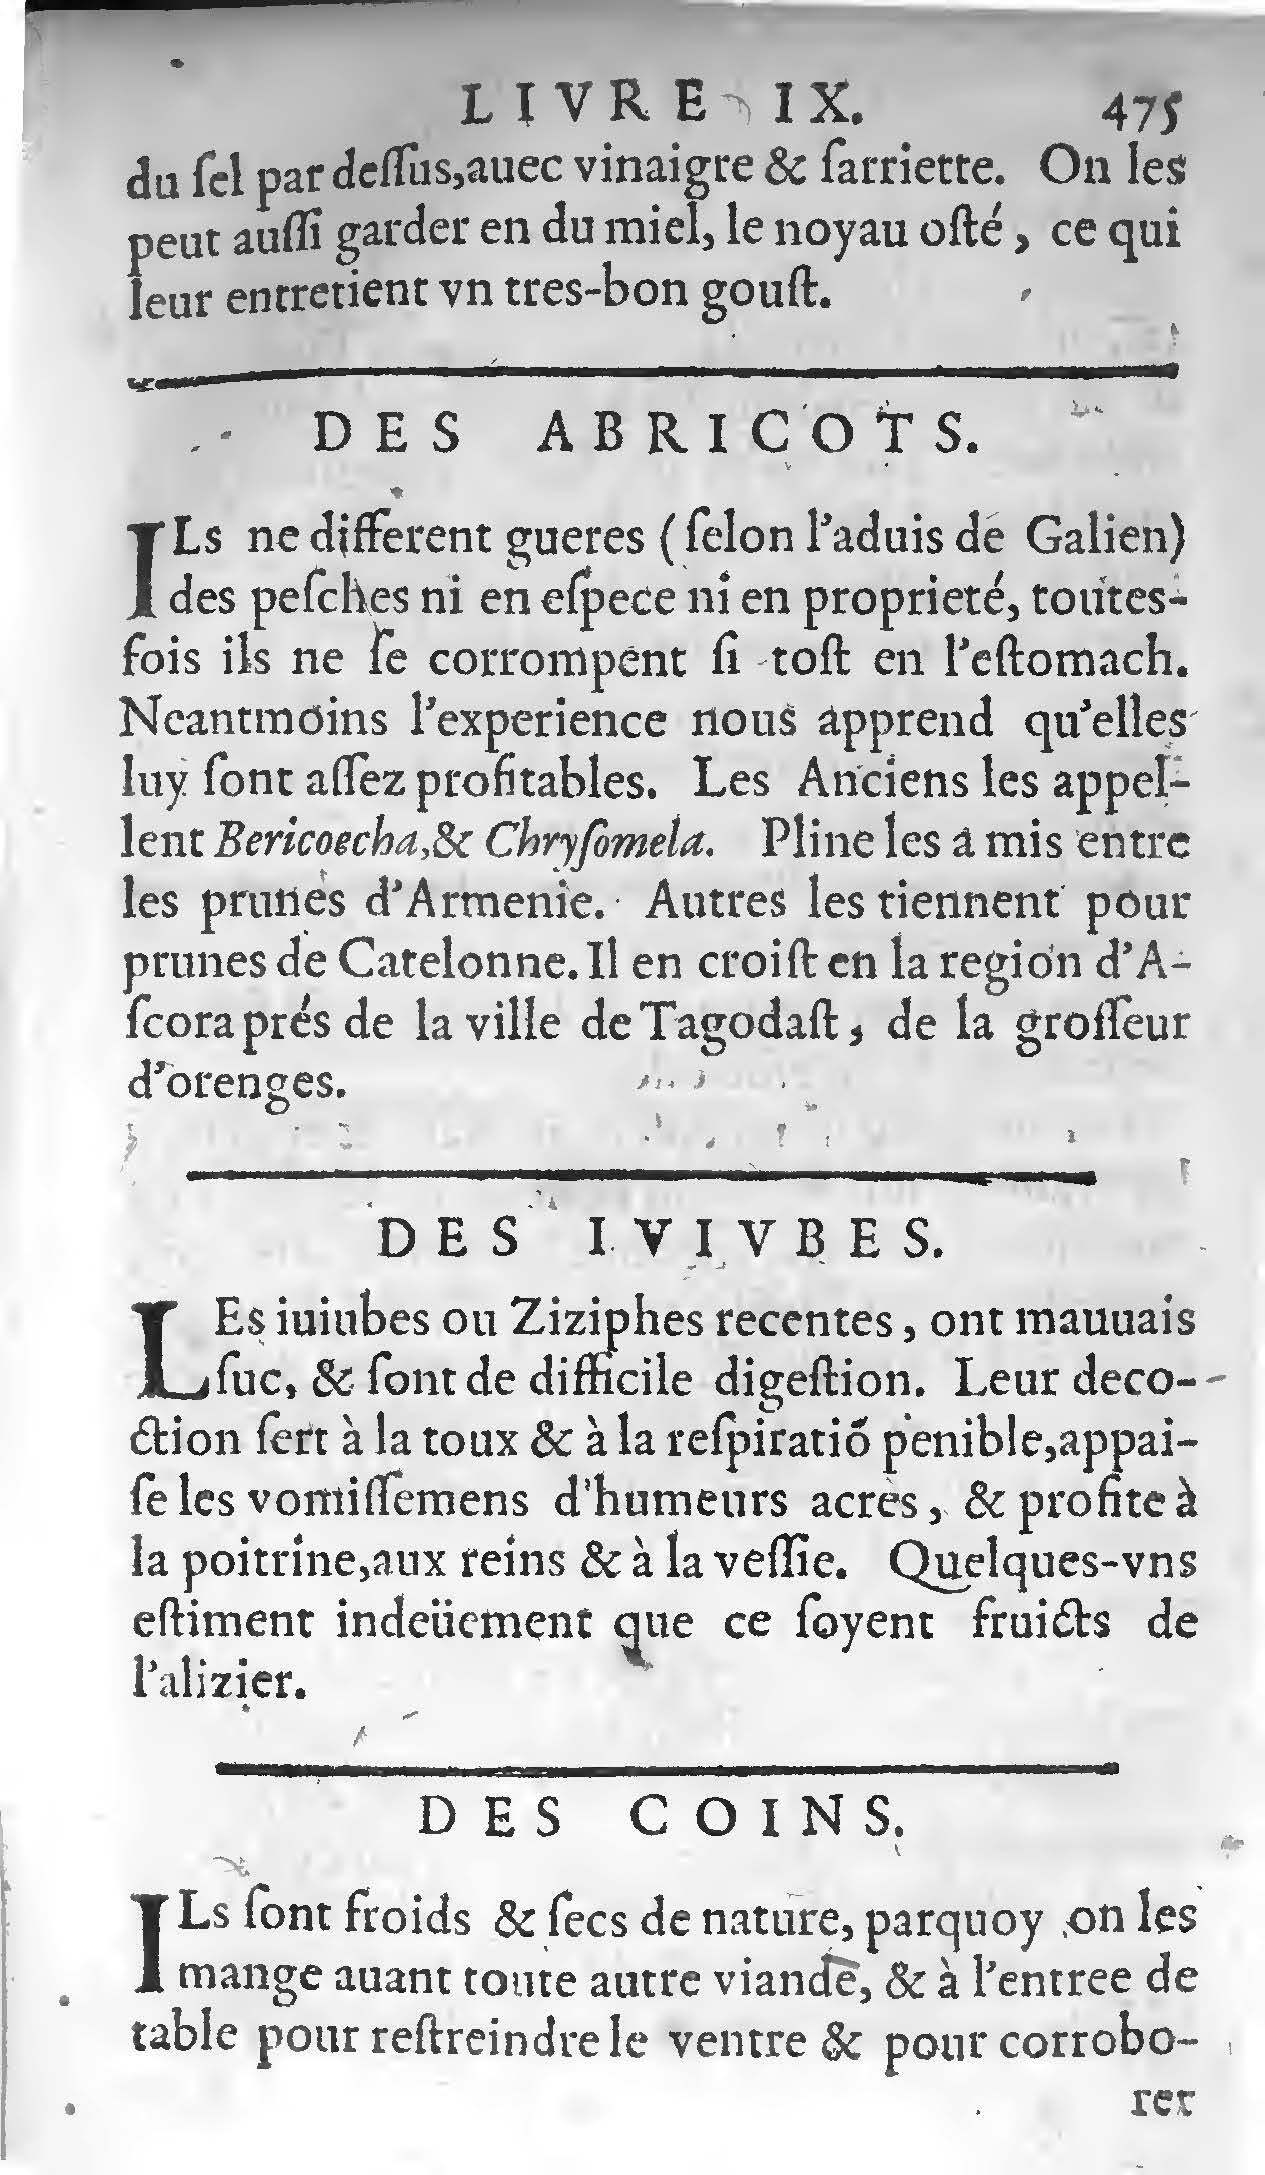 1607 Étienne Servain et Jean Antoine Huguetan - Trésor de santé ou ménage de la vie humaine - BIU Santé_Page_495.jpg